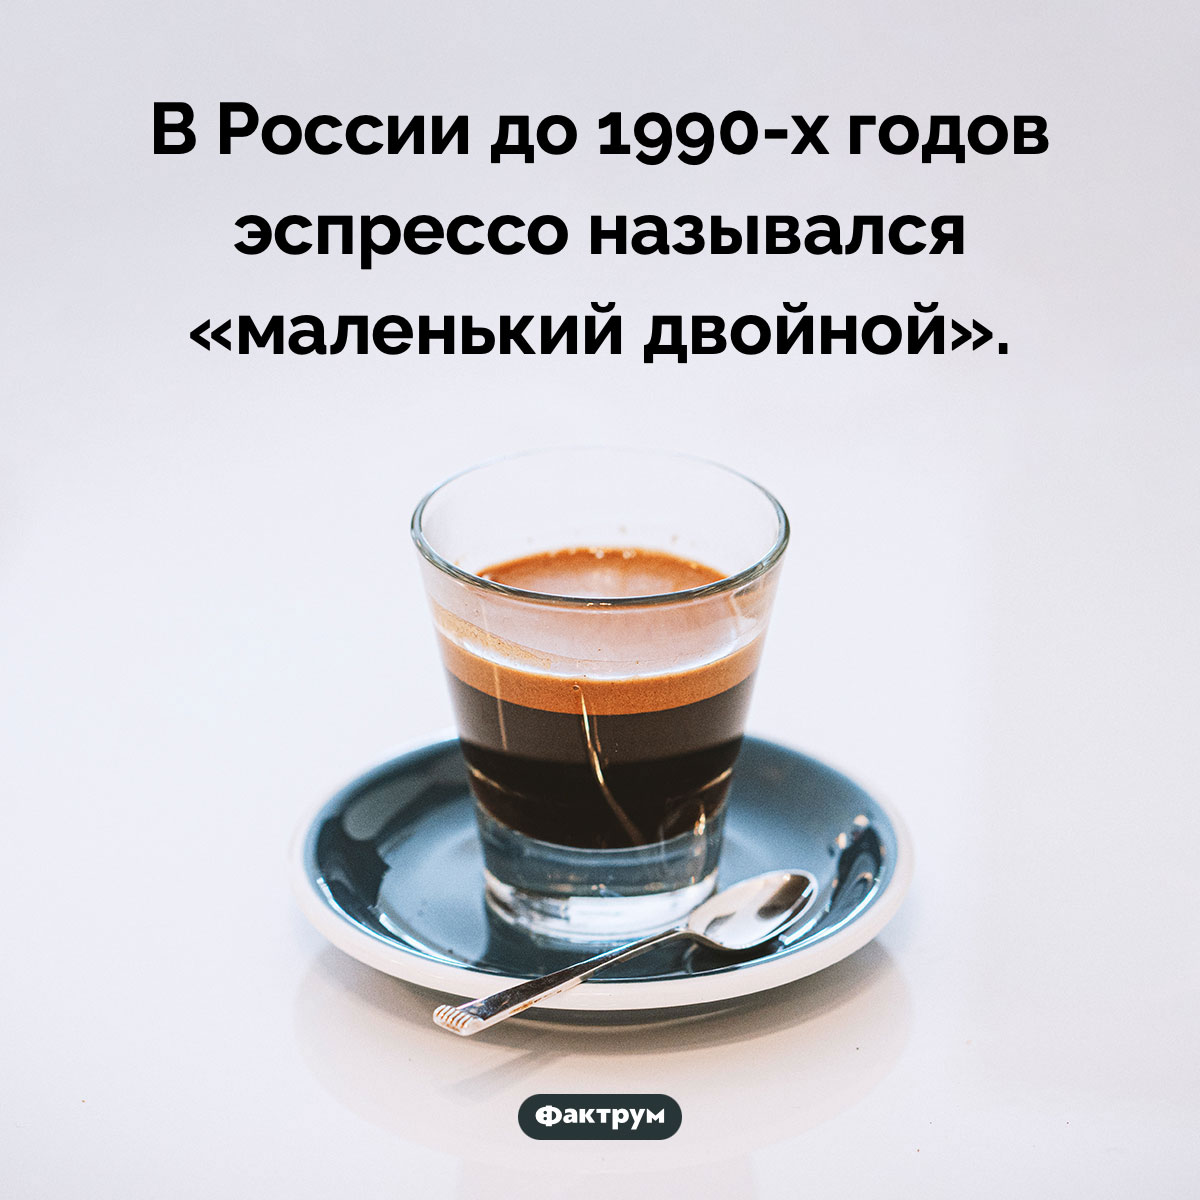 Маленький двойной. В России до 1990-х годов эспрессо назывался «маленький двойной».